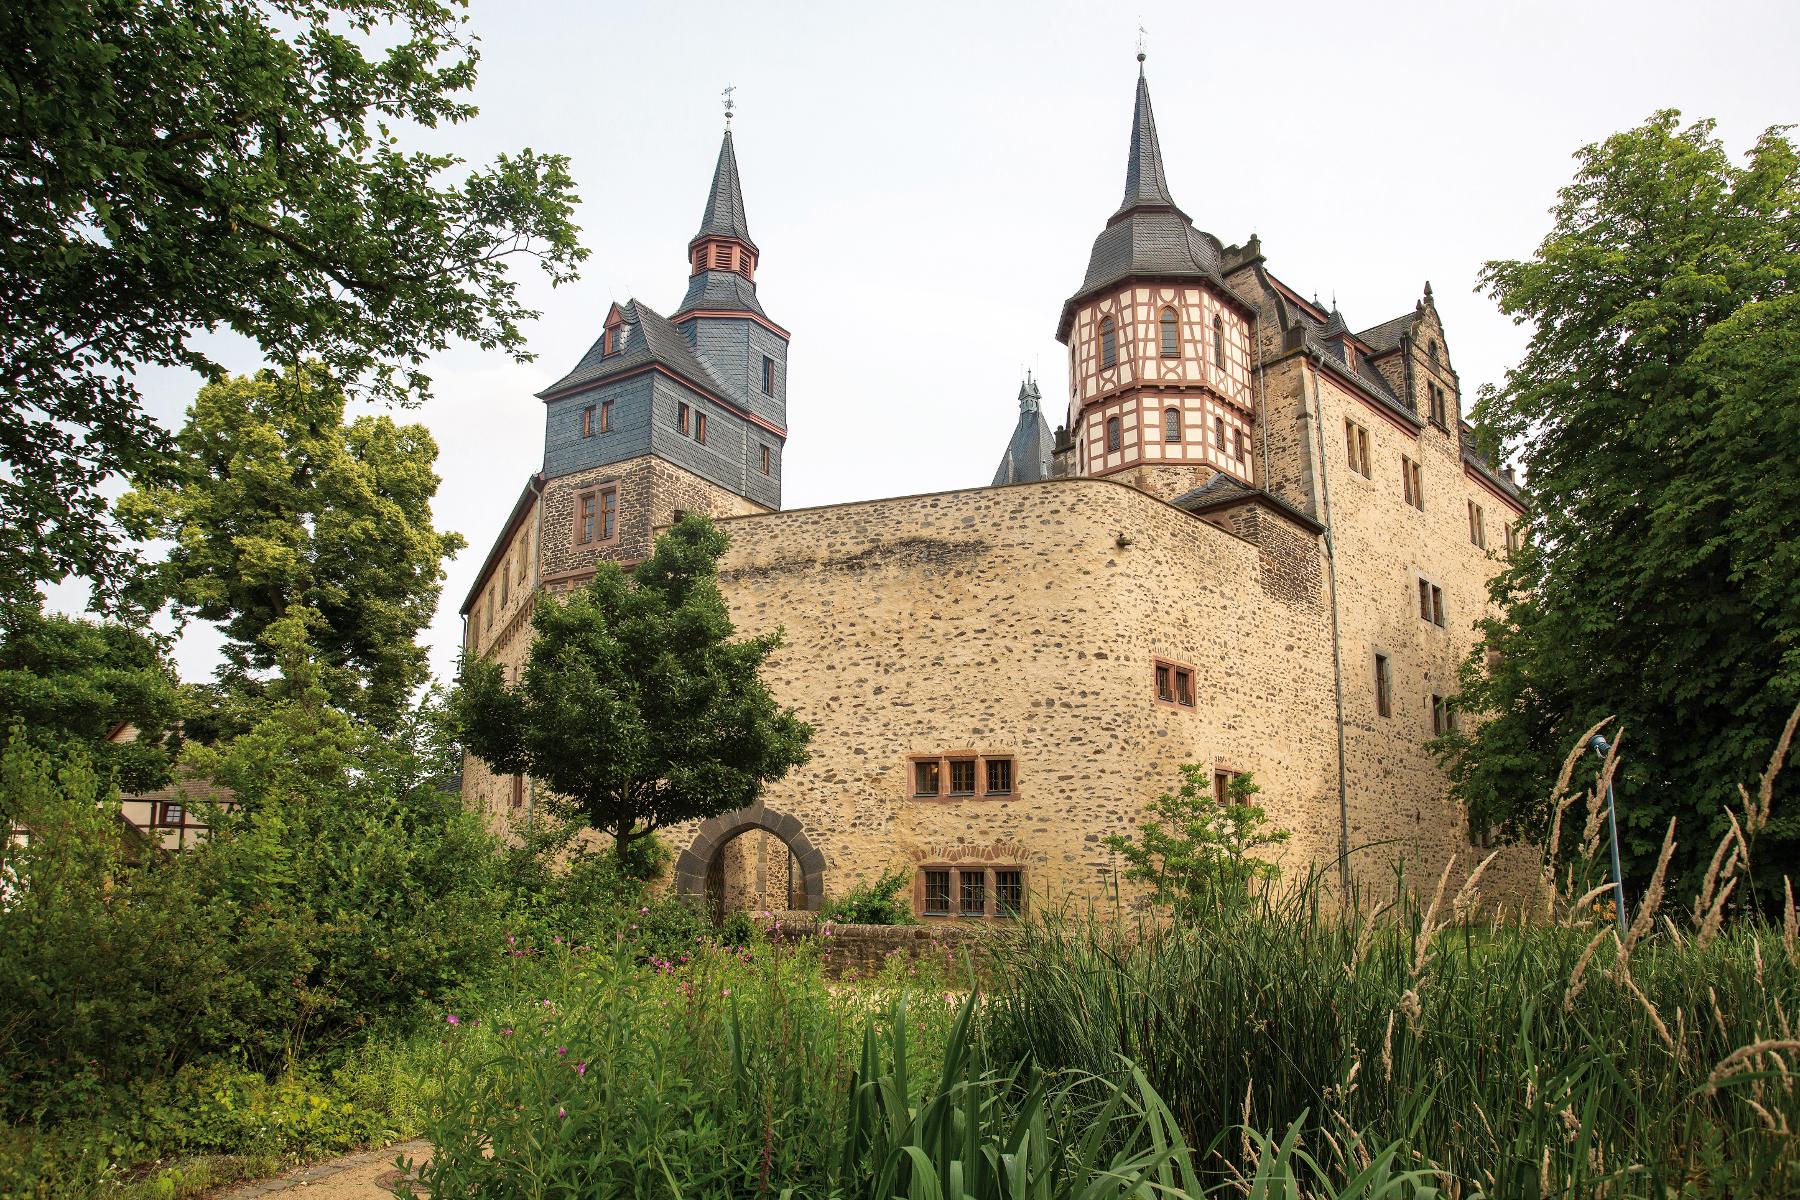 Romrod - das zentralste Schloss Deutschlands
Zentrum der Kernstadt von Romrod ist das Schloss. Wie aus dem Märchen erscheint der Bau mit seinen hohen Türmen und Mauern. Einst eine staufische Wasserburg so scheint das Schloss bis heute die Stadt zu beherrschen. Doch läßt sich hier nicht nur fürstl...